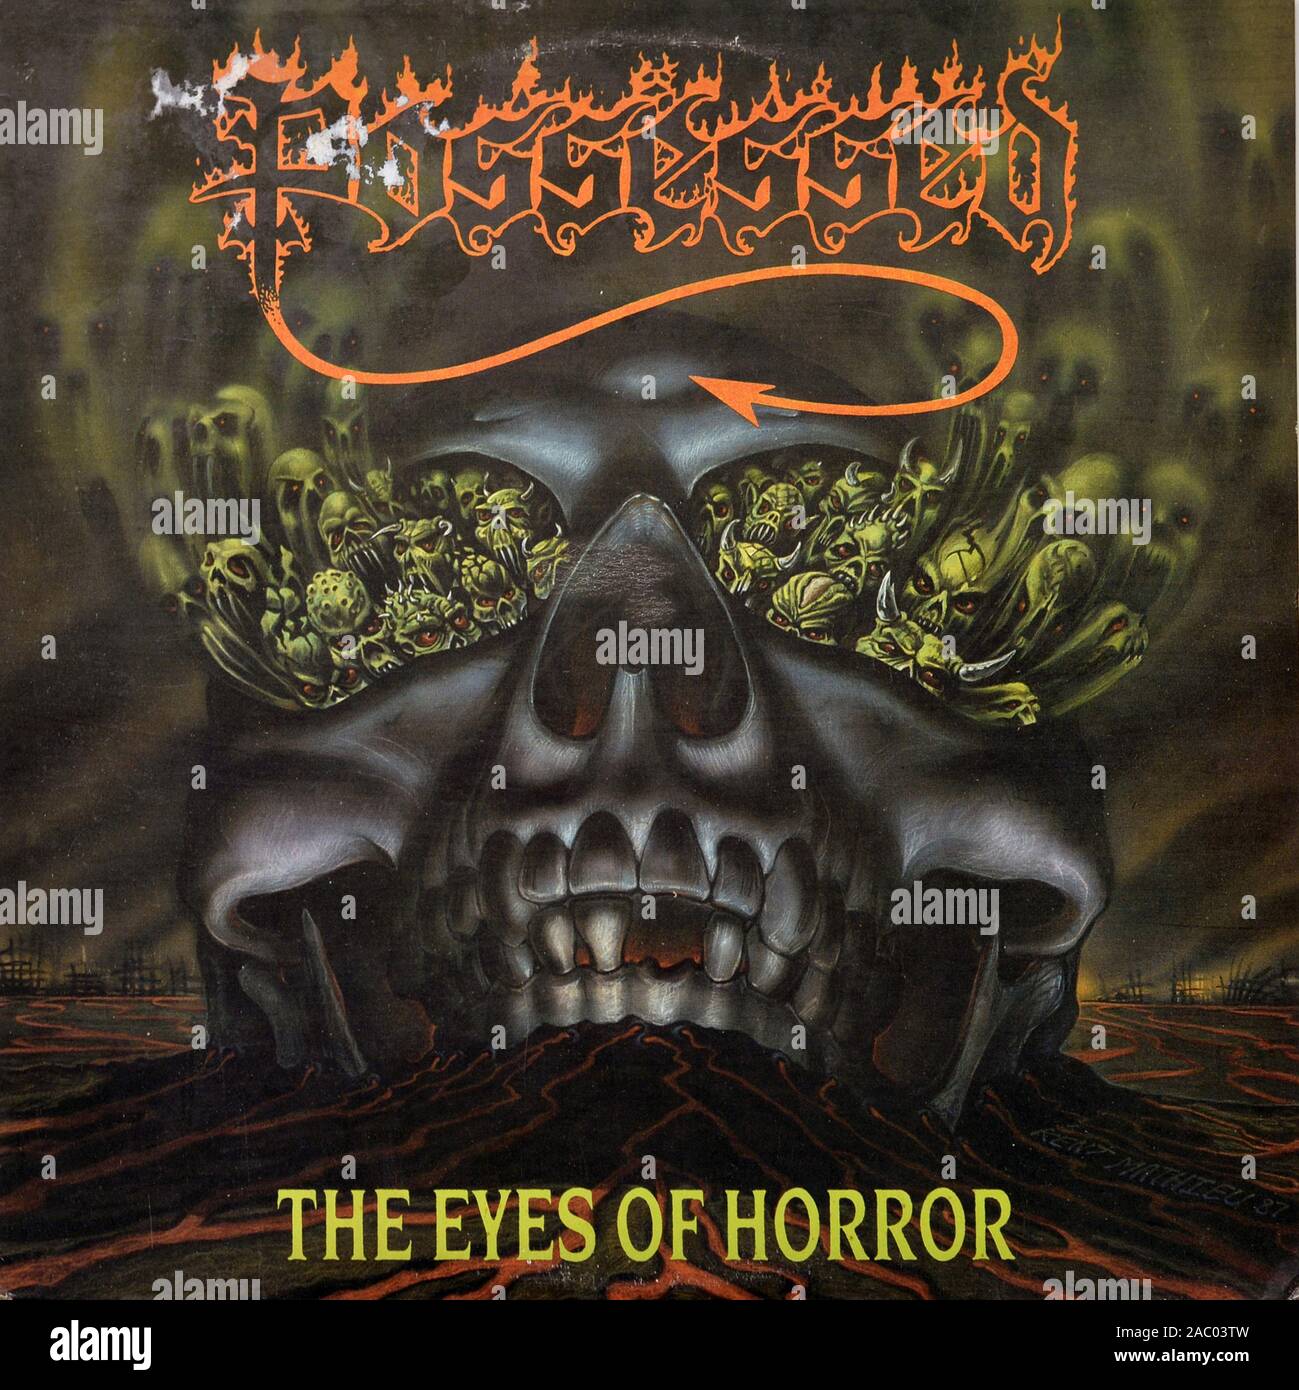 POSSESSED The Eyes Of Horror - Vintage vinyl album cover Stock